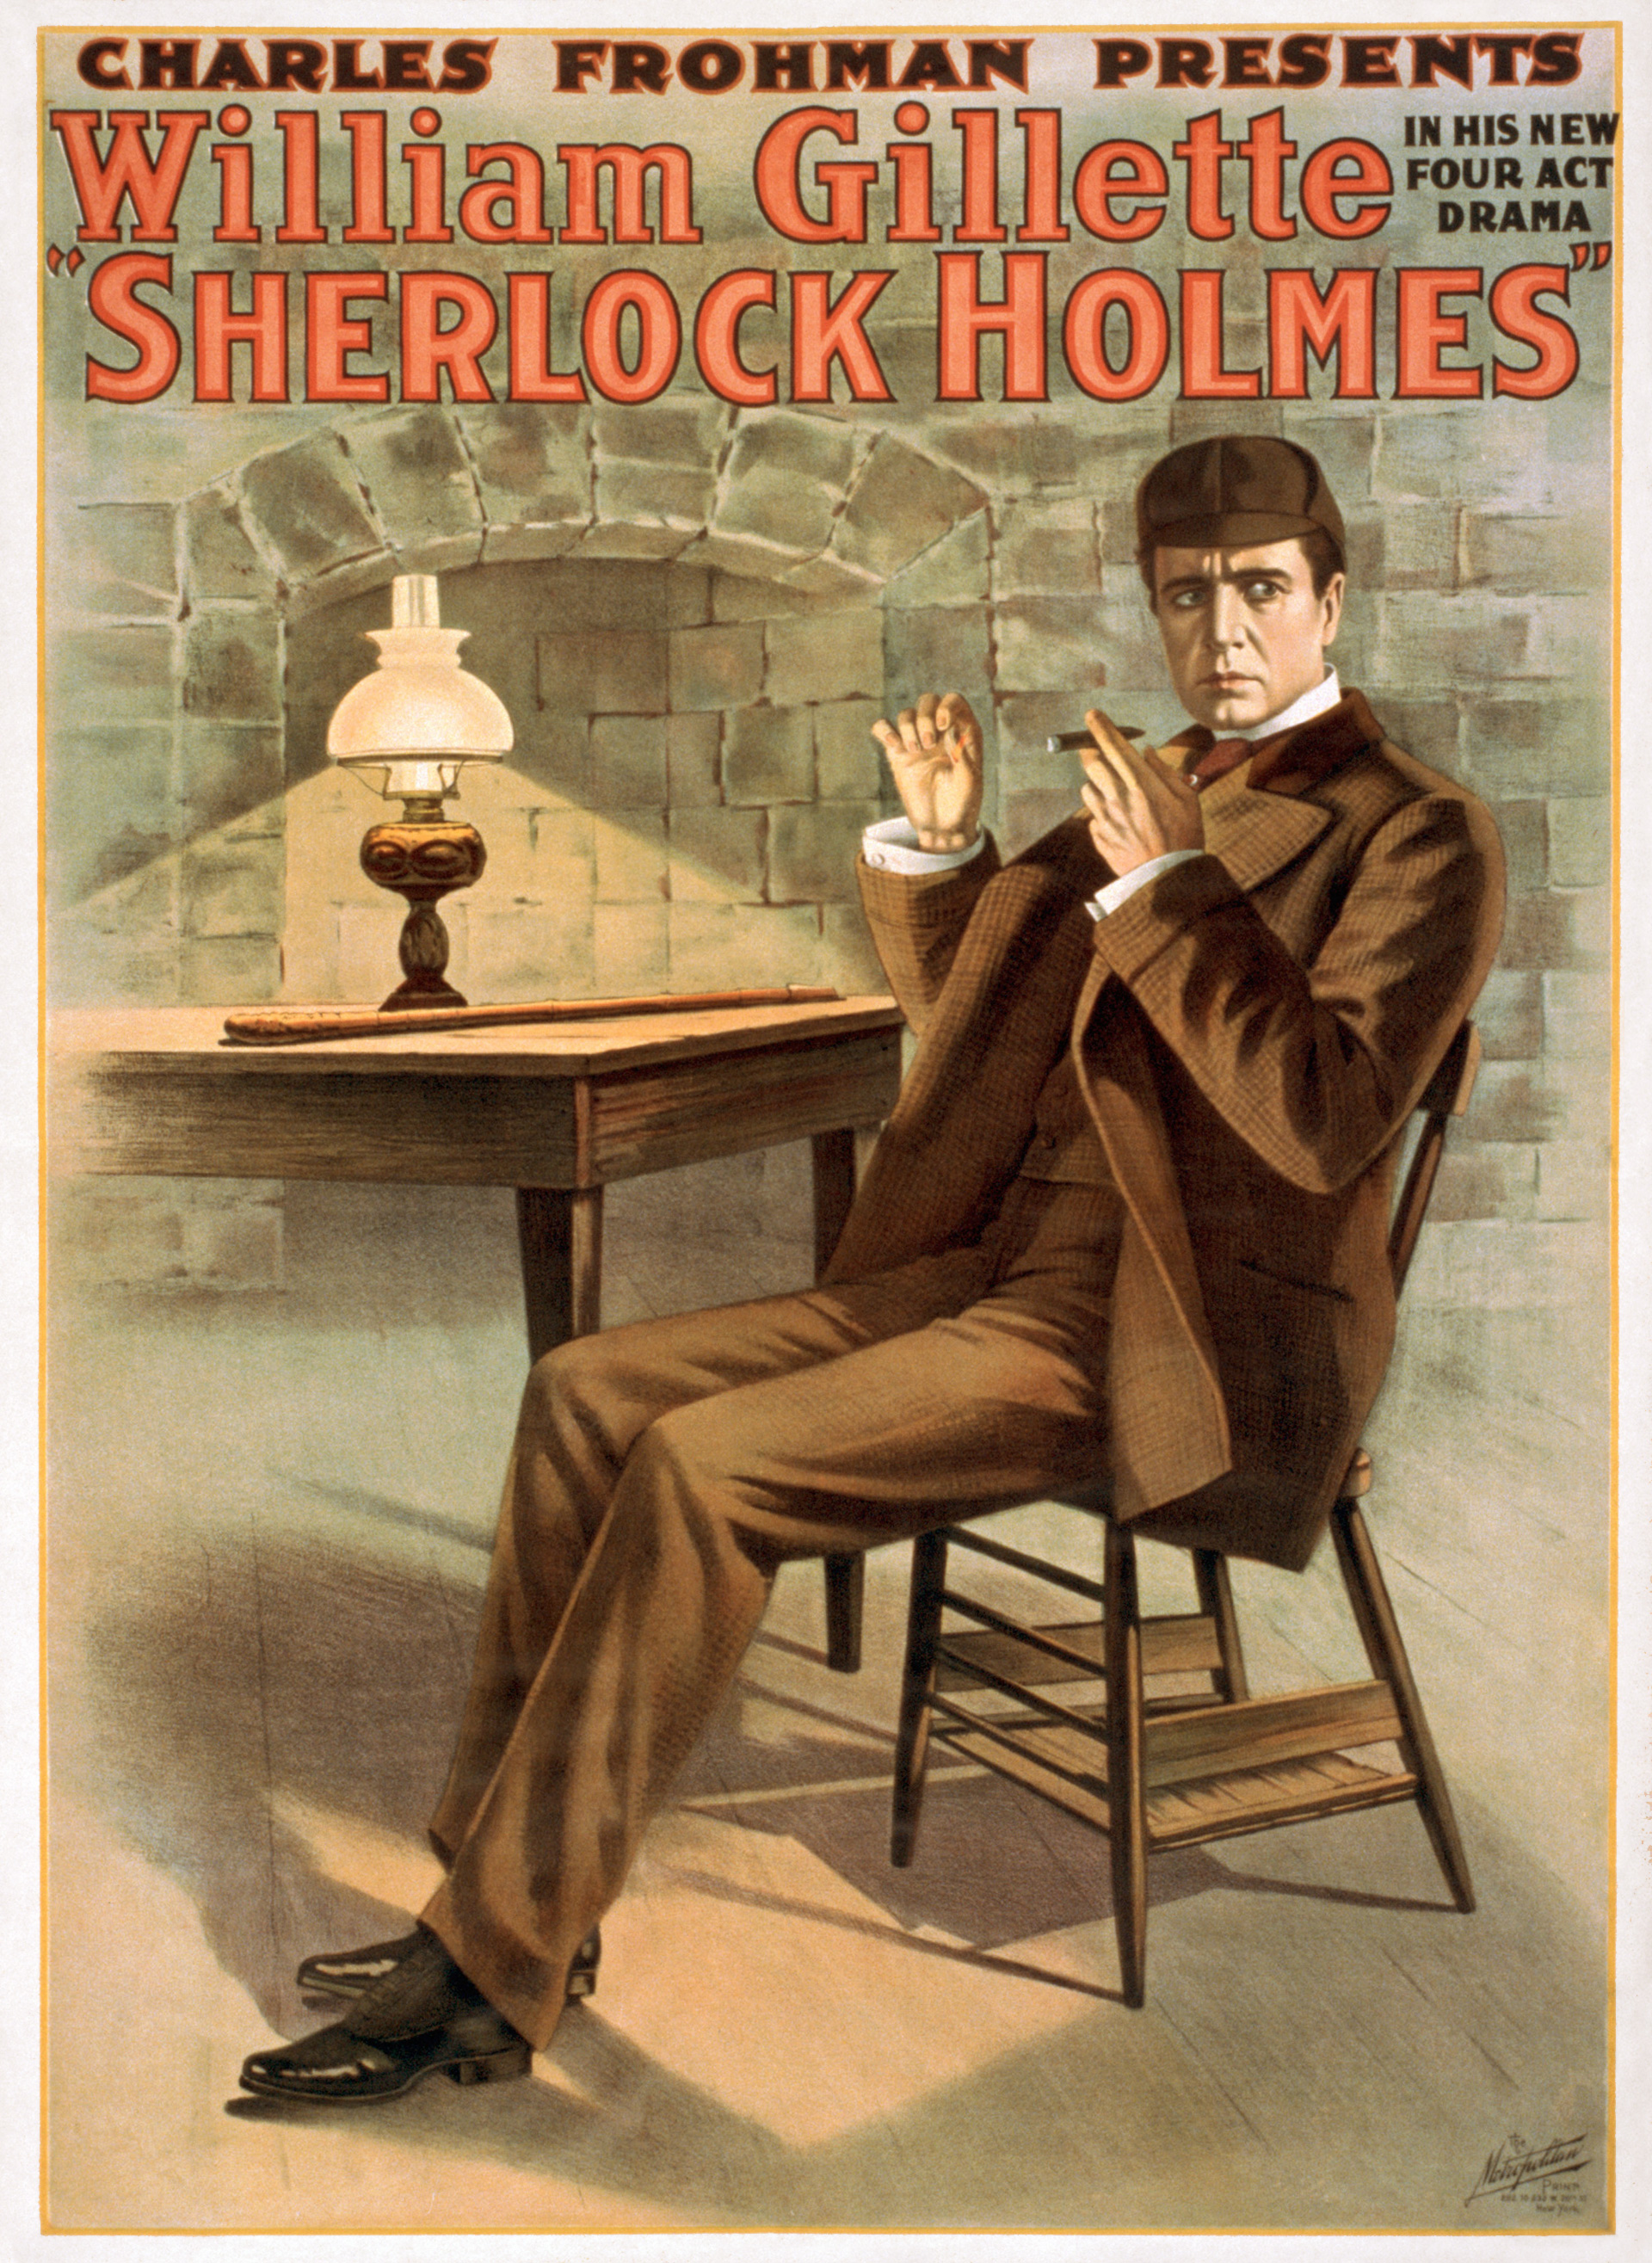 Афиша постановки 1900 года про Шерлока Холмса, с Вильямом Джилеттом в роли Холмса. В постановке и появилась фраза Элементарно, мой дорогой Ватсон, которая отсутствует в рассказах